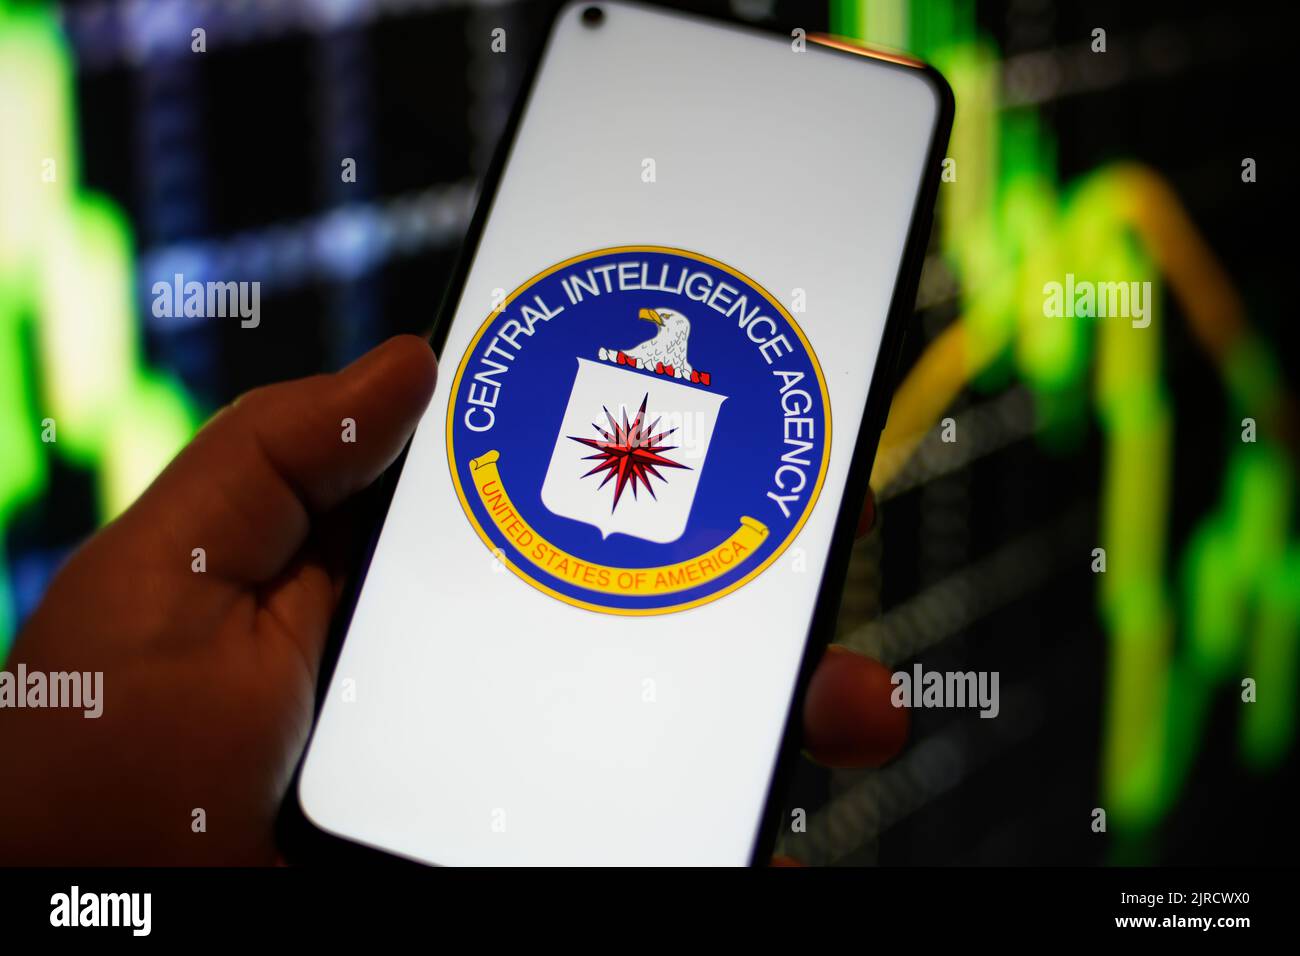 Le logo de la CIA (Central Intelligence Agency) est visible sur un écran de téléphone Redmi dans cette illustration photo à Varsovie, en Pologne, le 23 août 2022. Banque D'Images